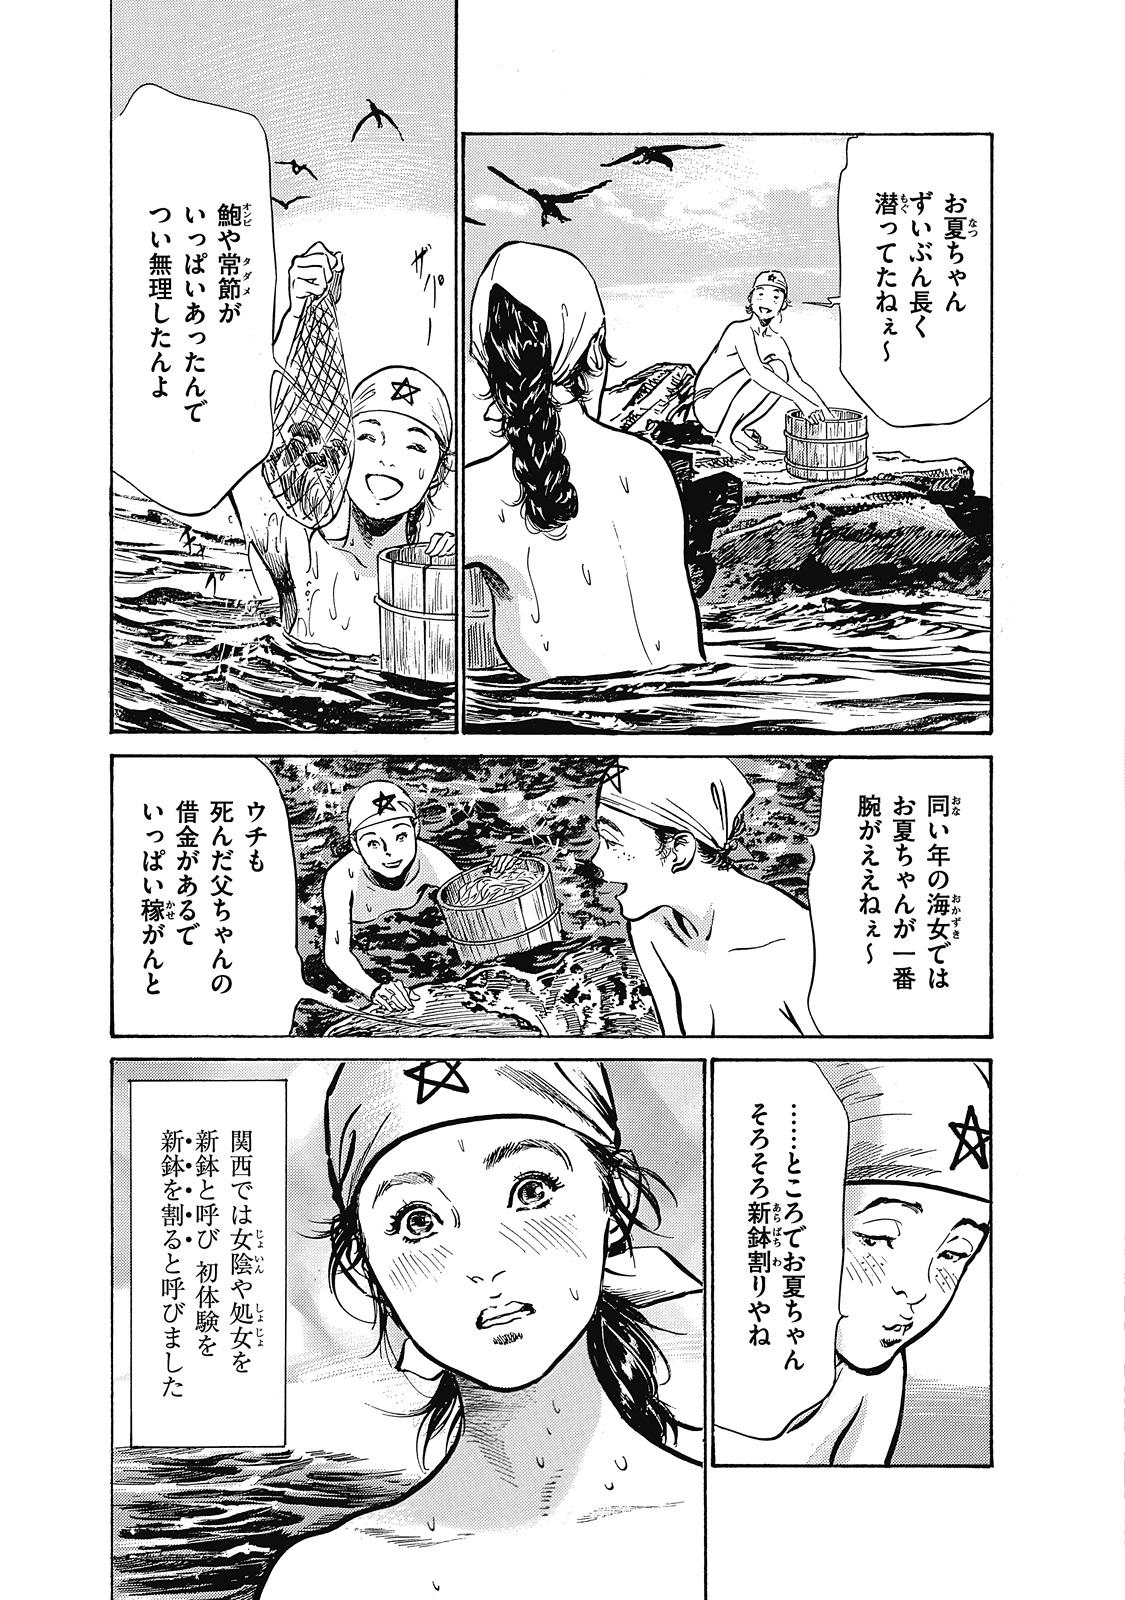 Groupsex Ukiyo Tsuya Zoushi 6 Bedroom - Page 7